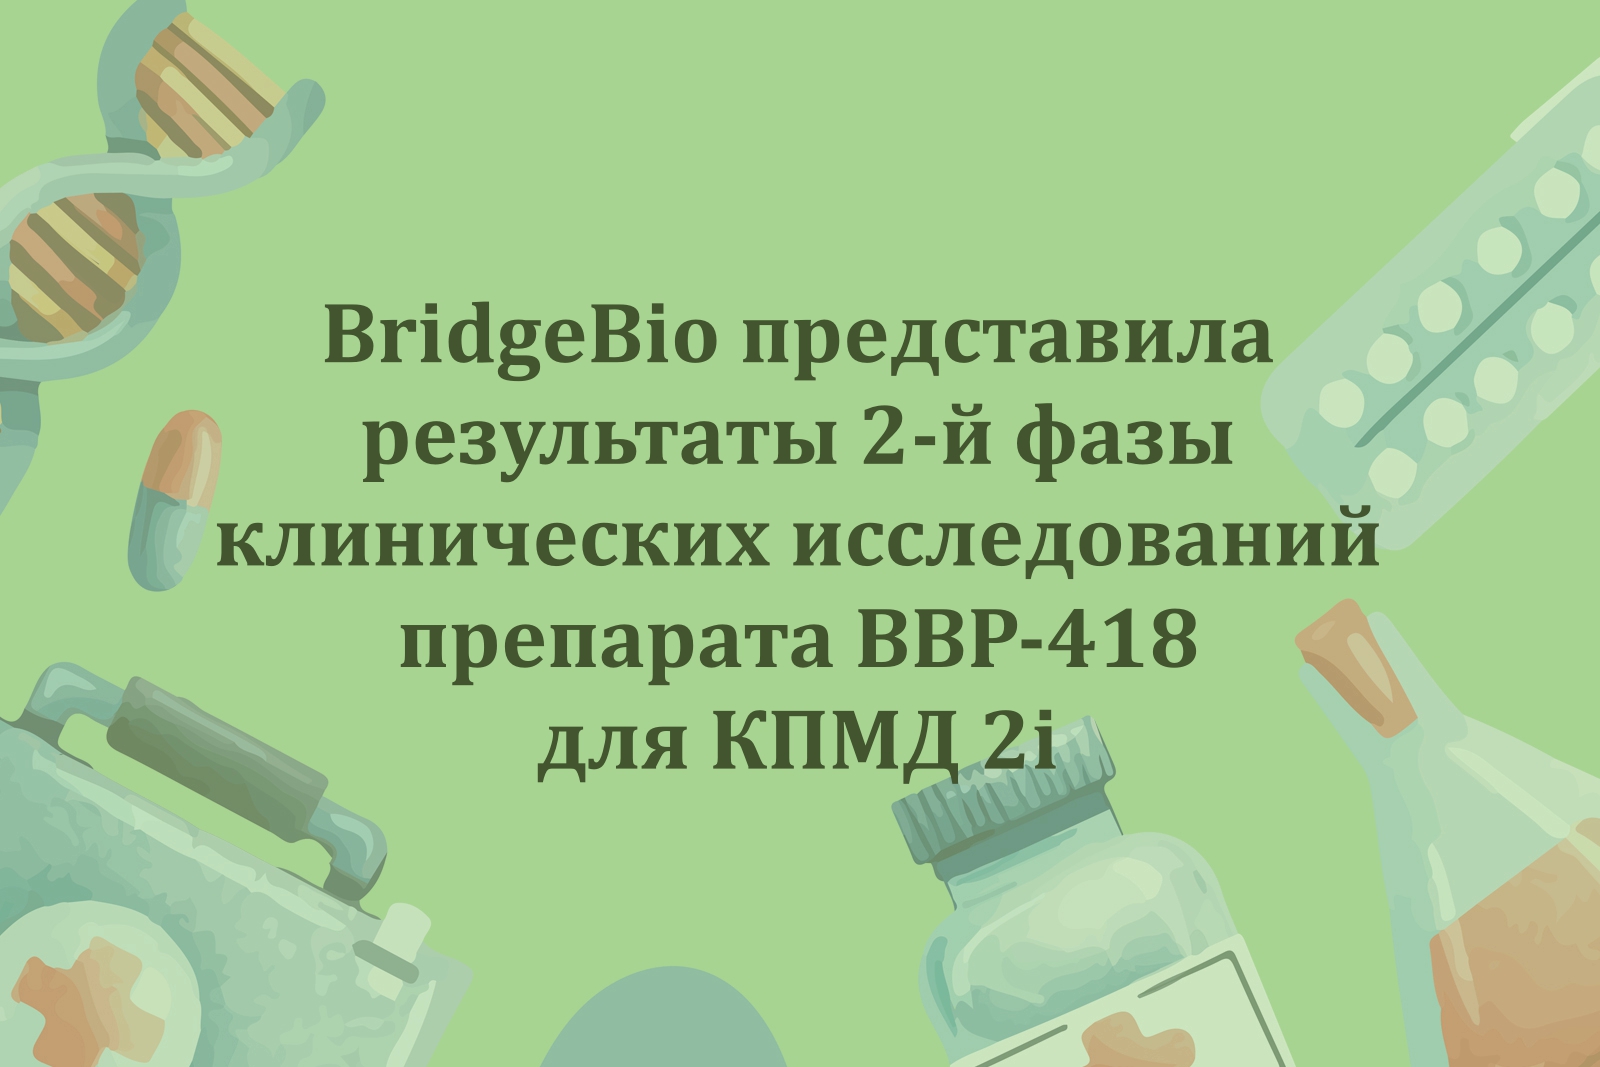 BridgeBio представила результаты 2-й фазы КИ препарата BBP-418 для КПМД 2i